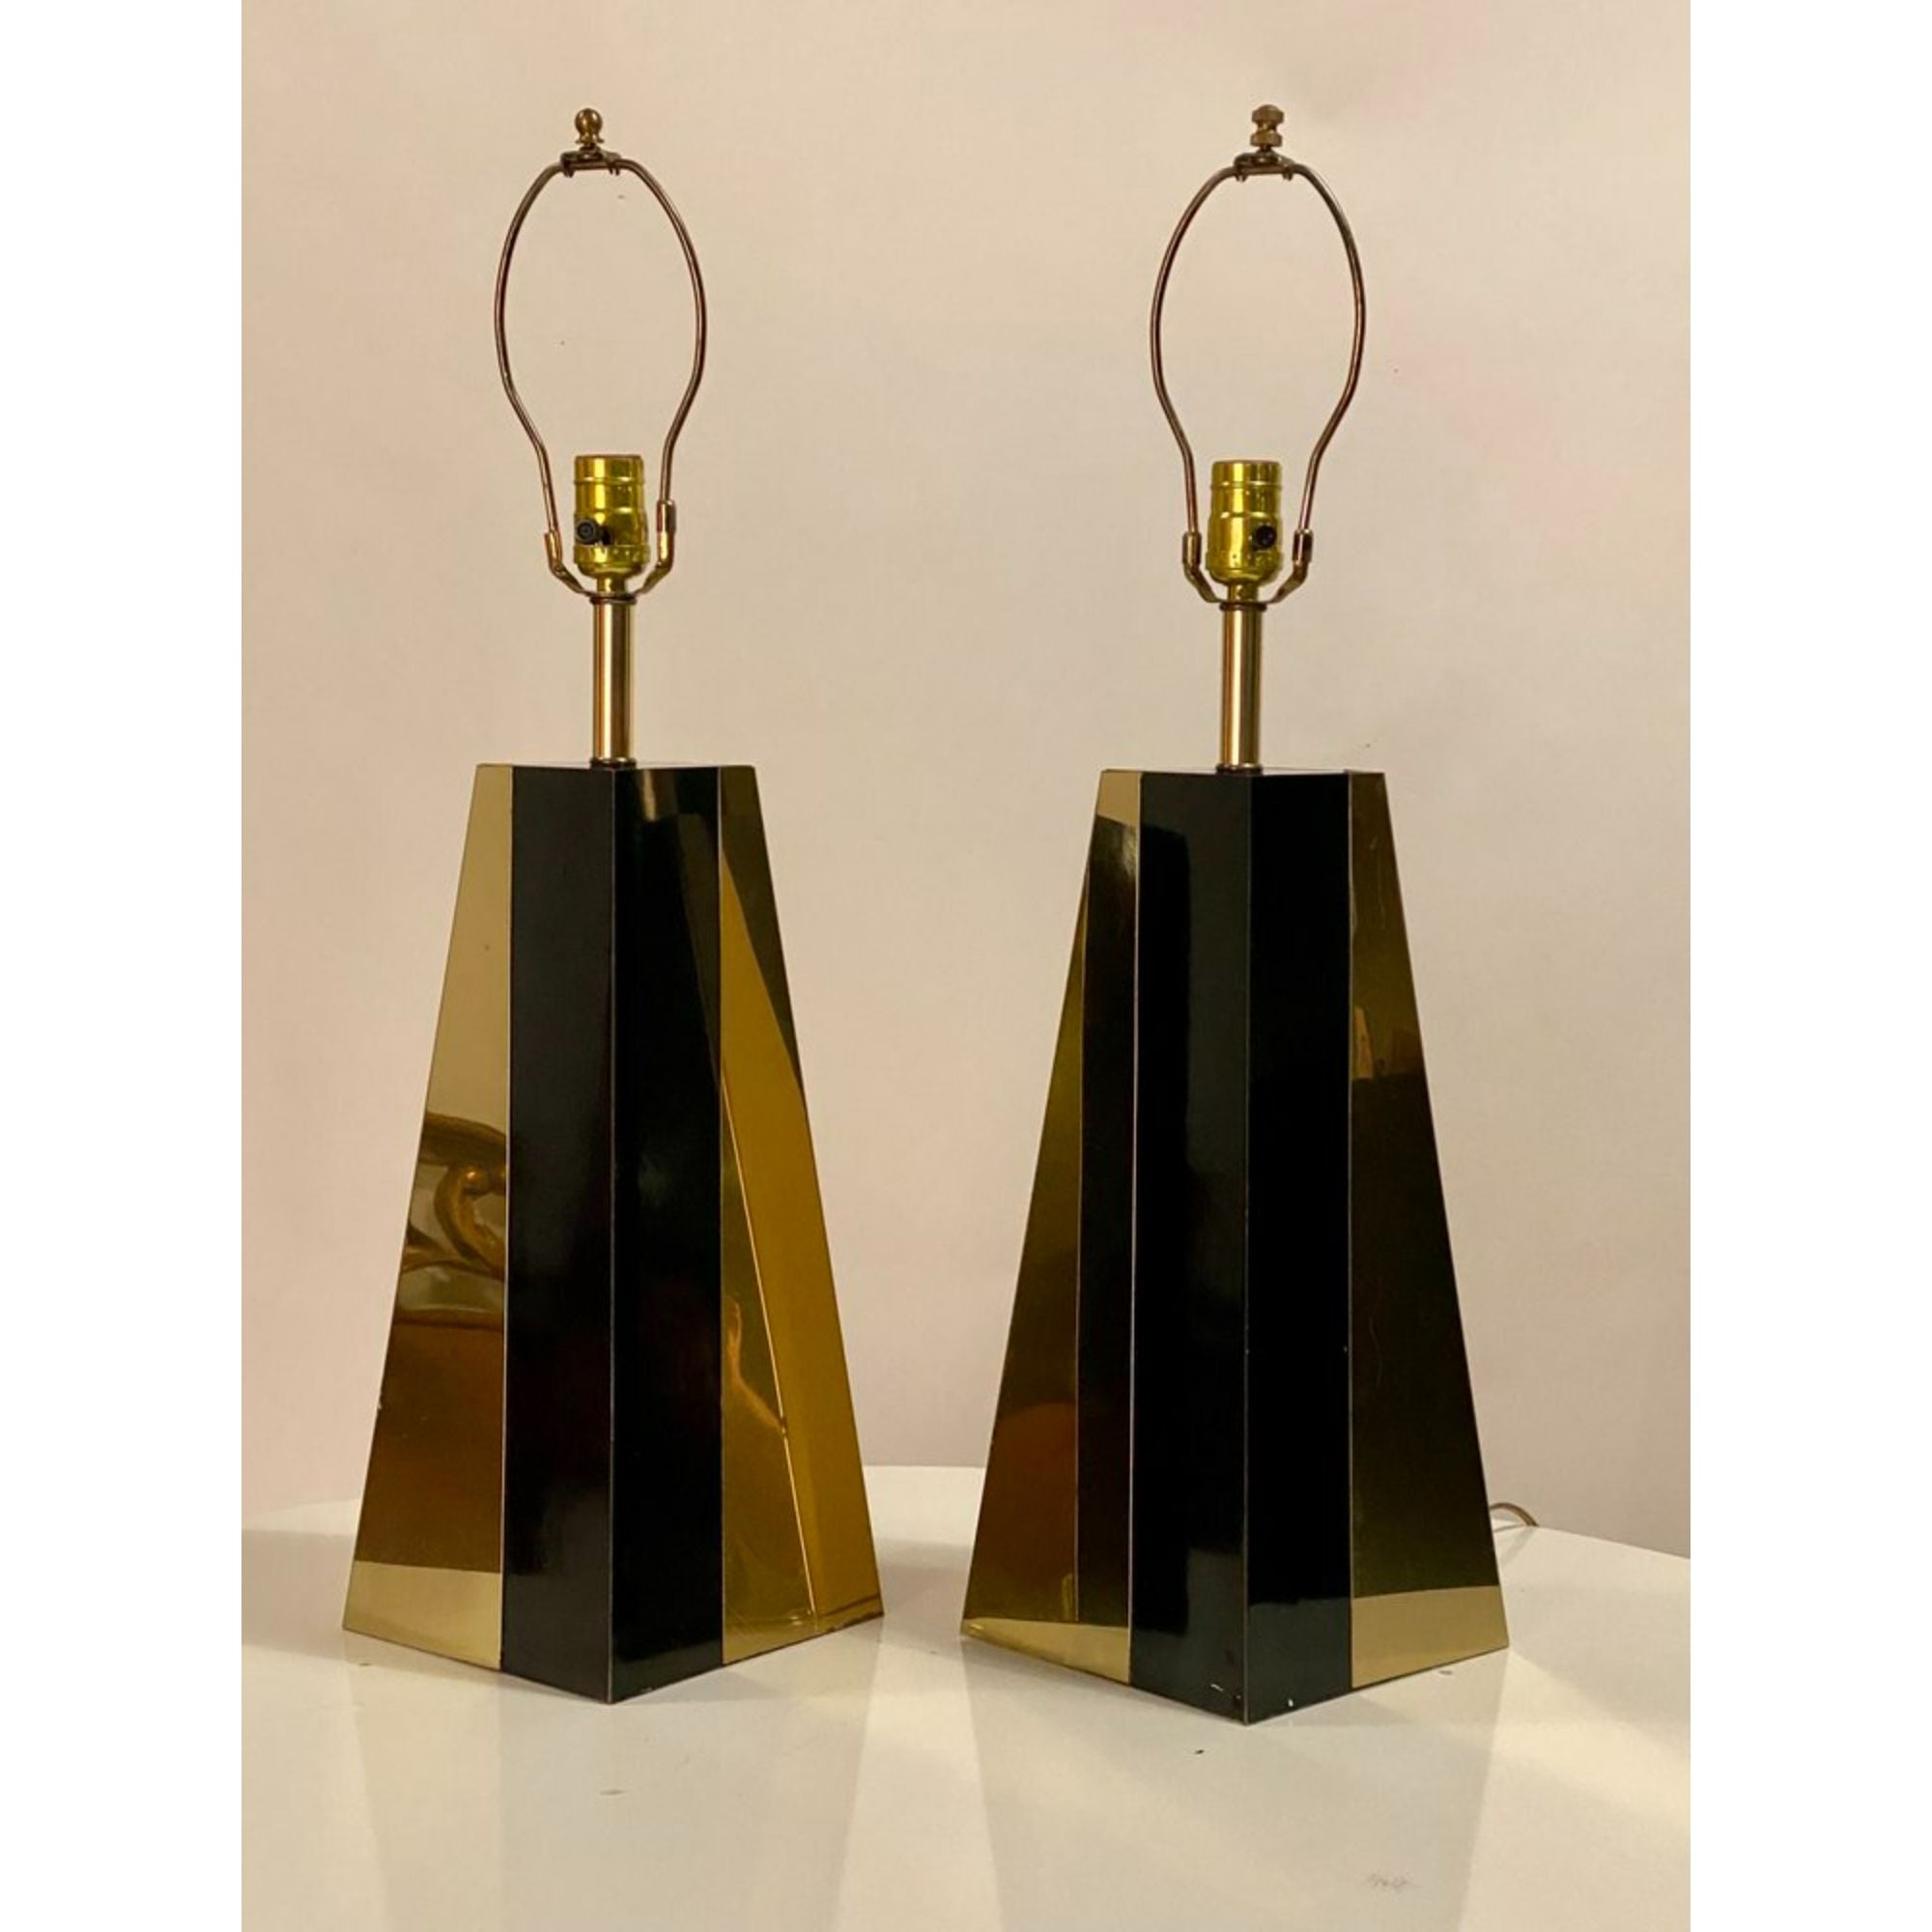 Ein Paar pyramidenförmige Glamour-Tischlampen aus den 1970er Jahren in Schwarz und Messing im Stil von Pierre Cardin. Verkabelt und mit Harfen.

Zusätzliche Informationen:
MATERIALIEN: Messing
Farbe: Schwarz, Gold
Stil: Hollywood